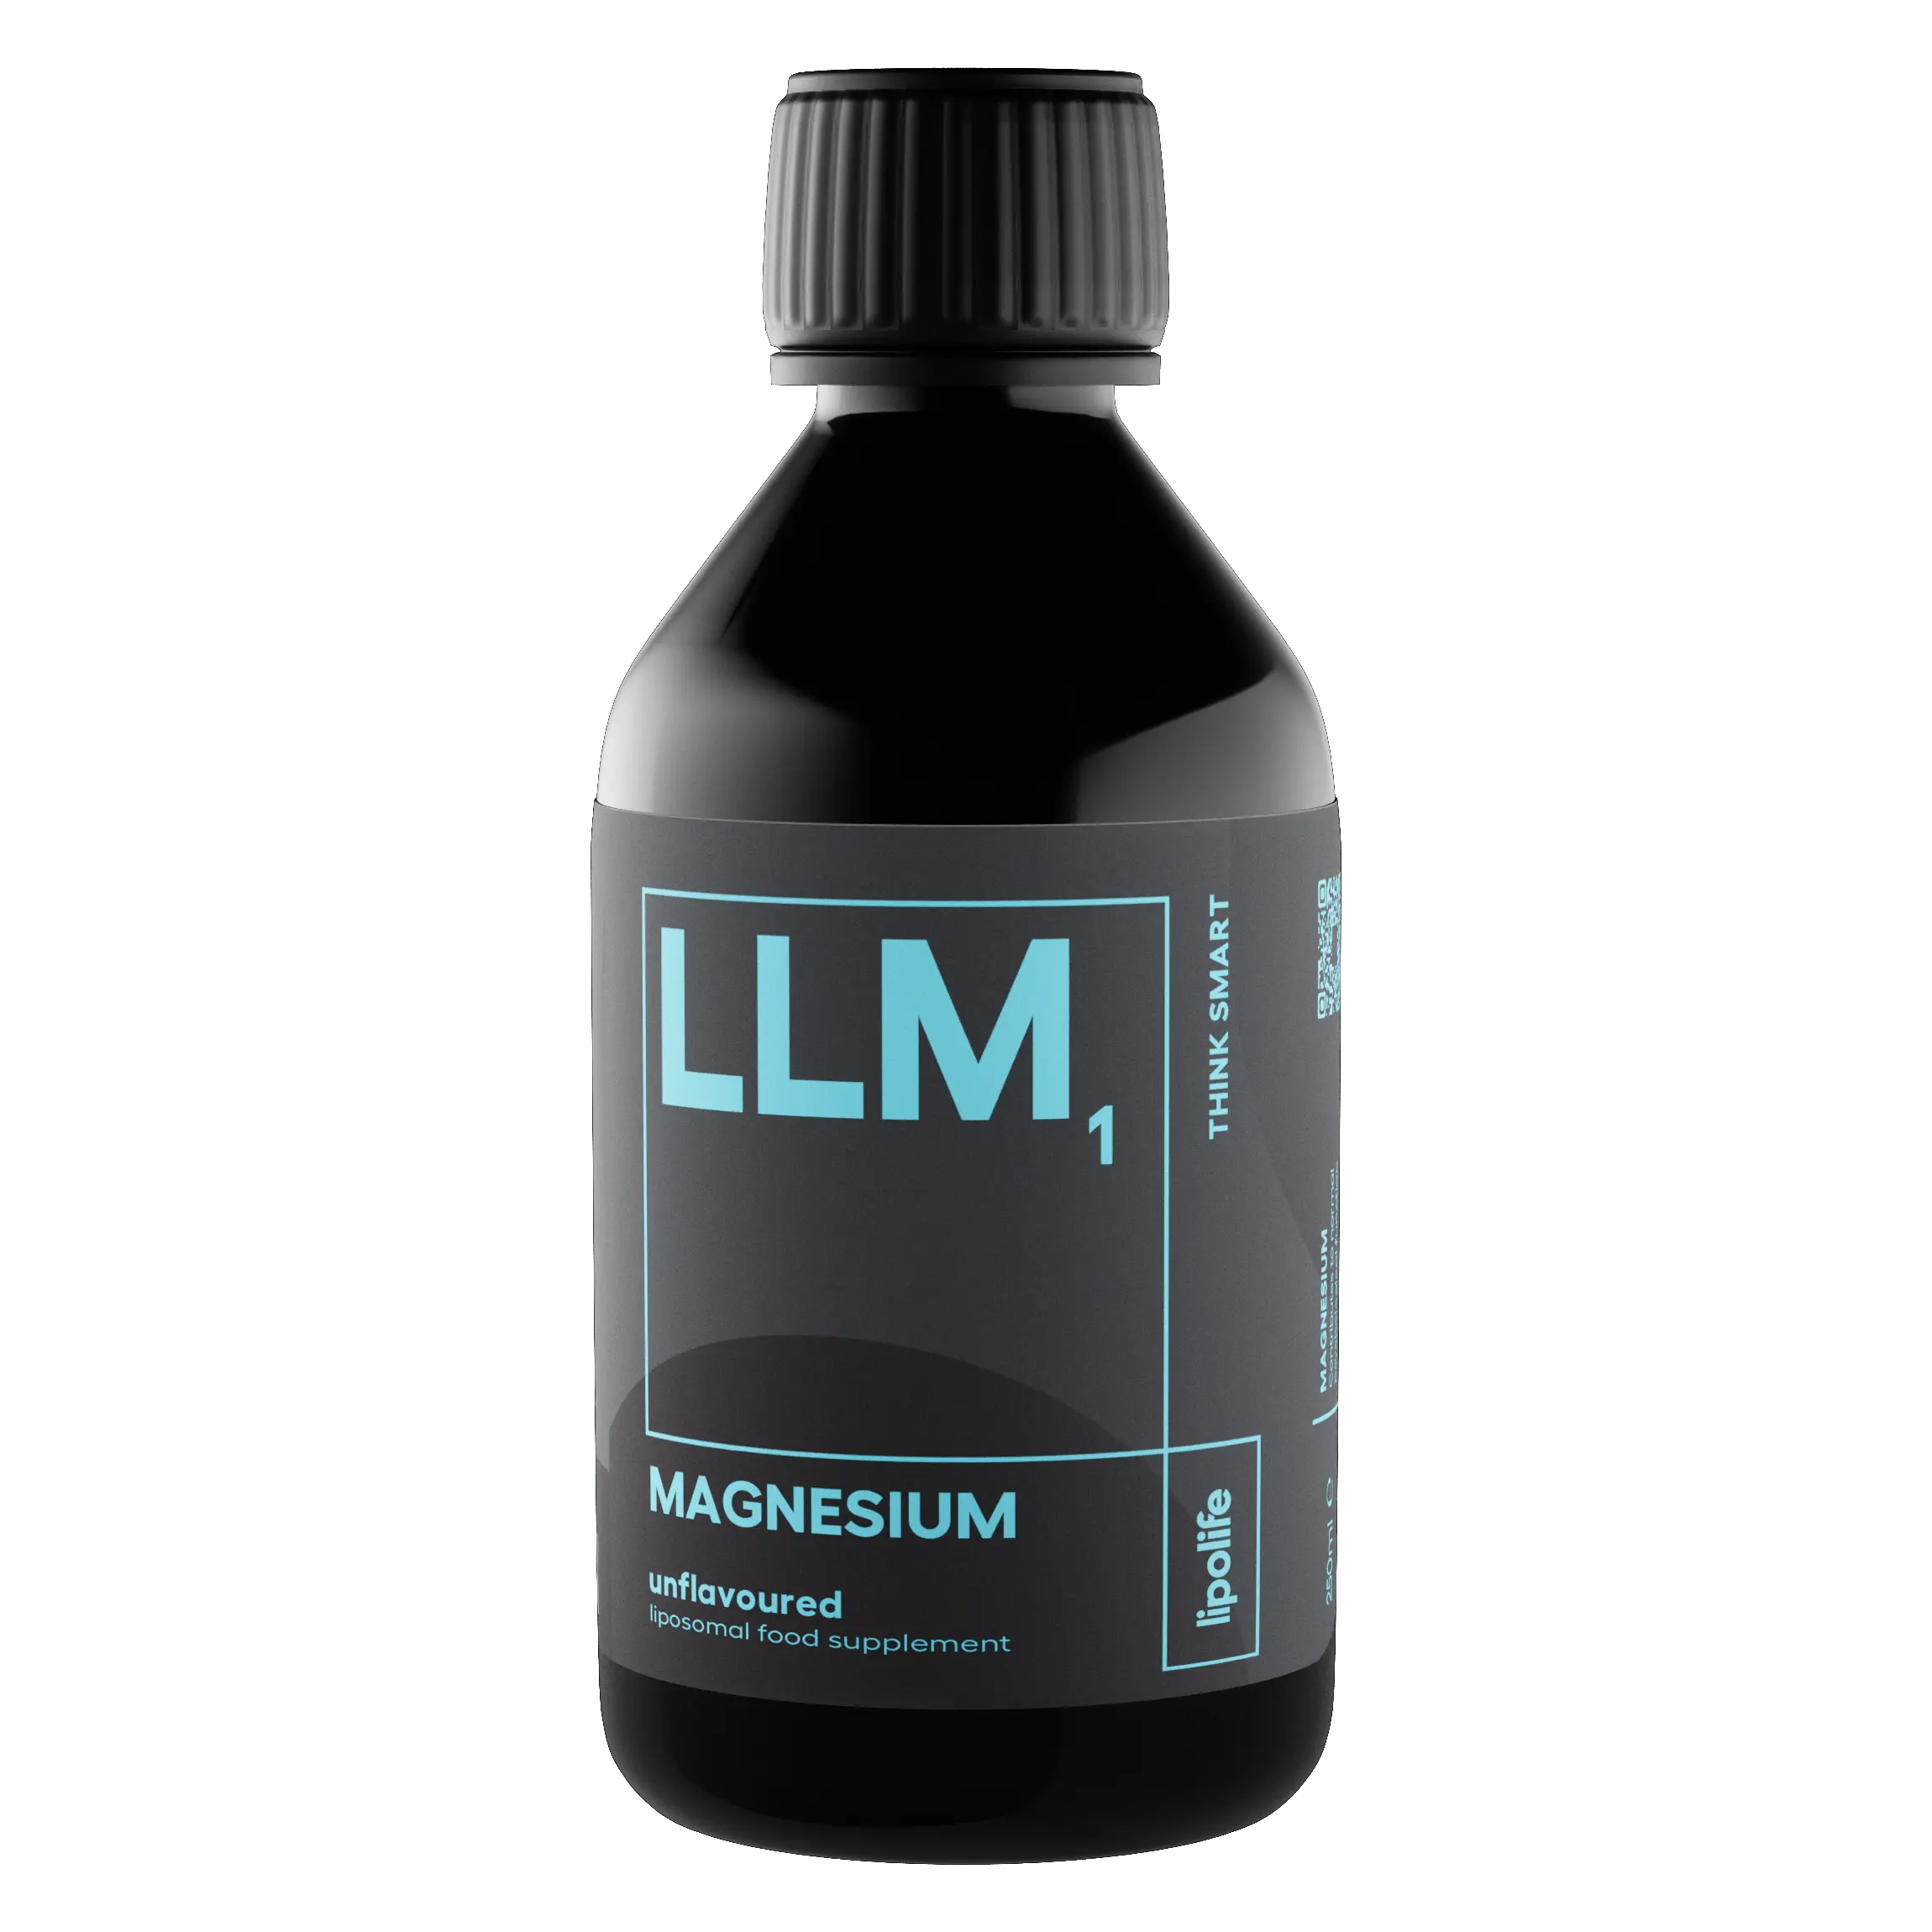 LLM1 - течен и липозомен магнезий, 240 мл.